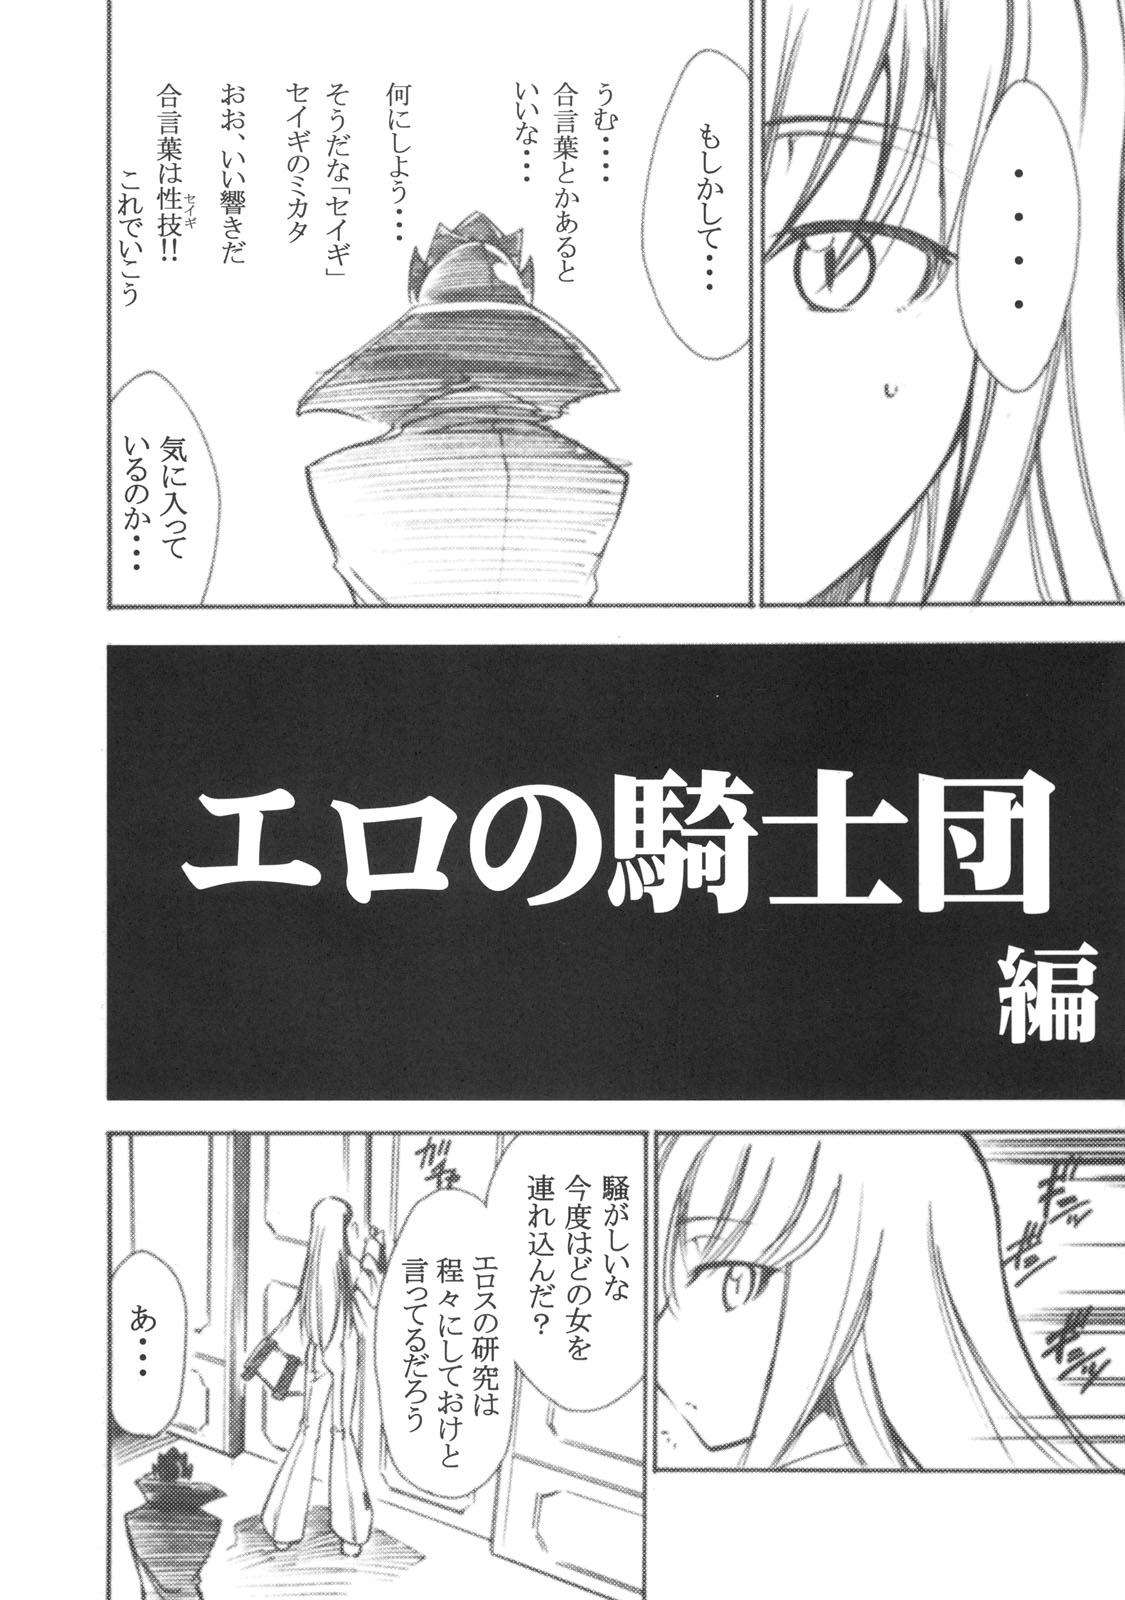 Girlfriend Code Eross 2: Ero no Kishidan - Code geass Blackwoman - Page 5